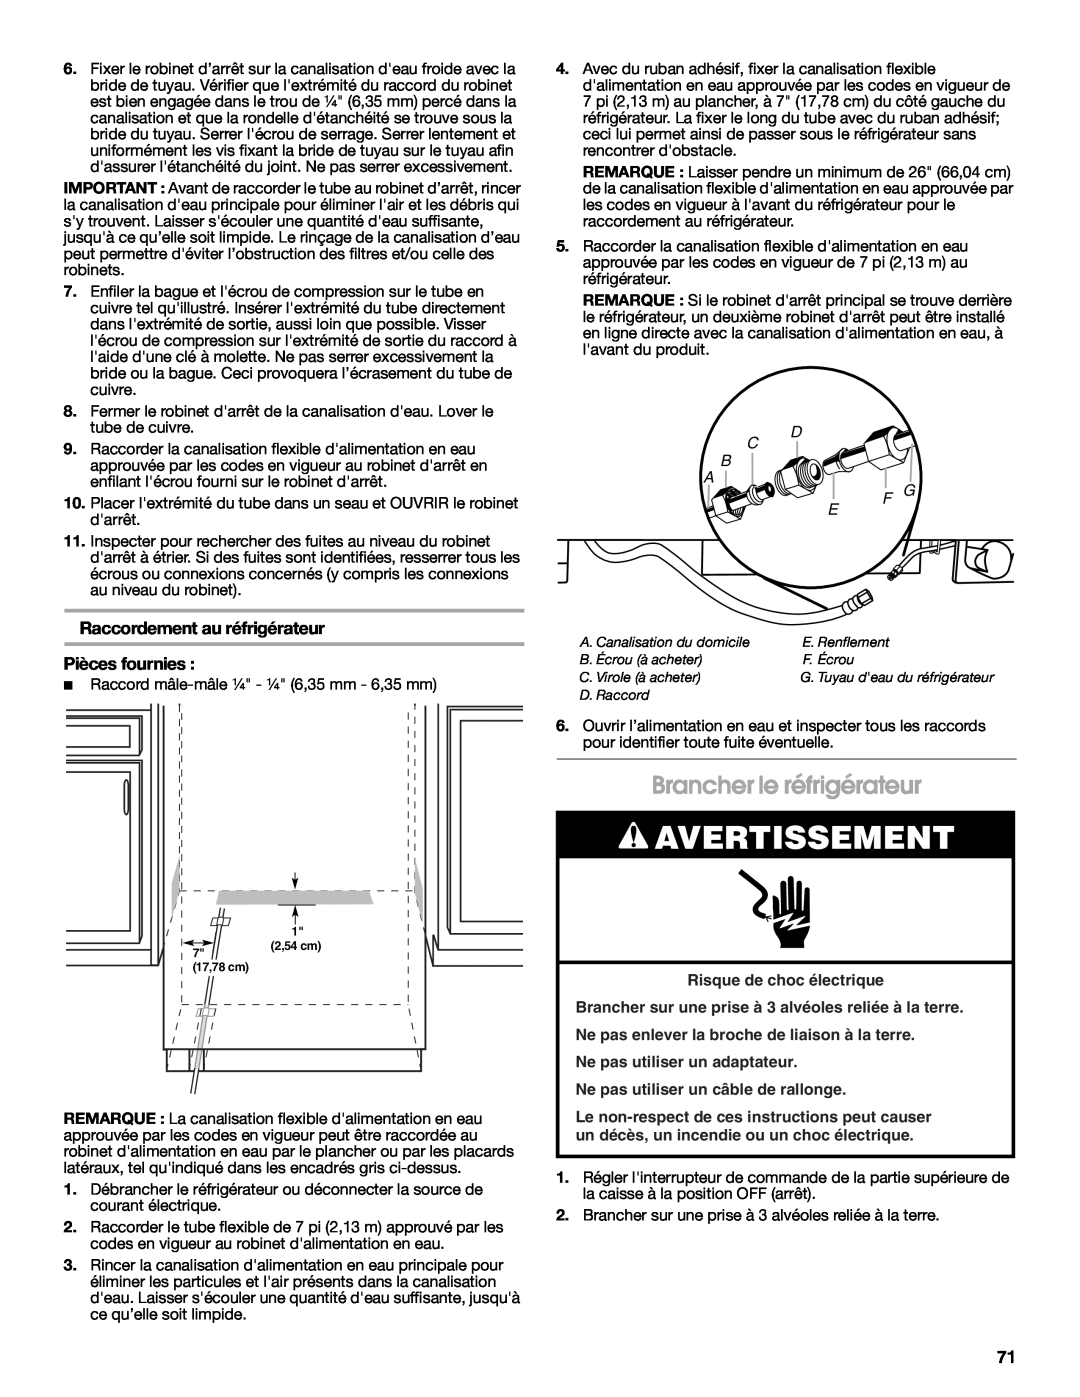 Jenn-Air W10379137A manual Brancher le réfrigérateur, Raccordement au réfrigérateur, Pièces fournies, Avertissement, C B A 